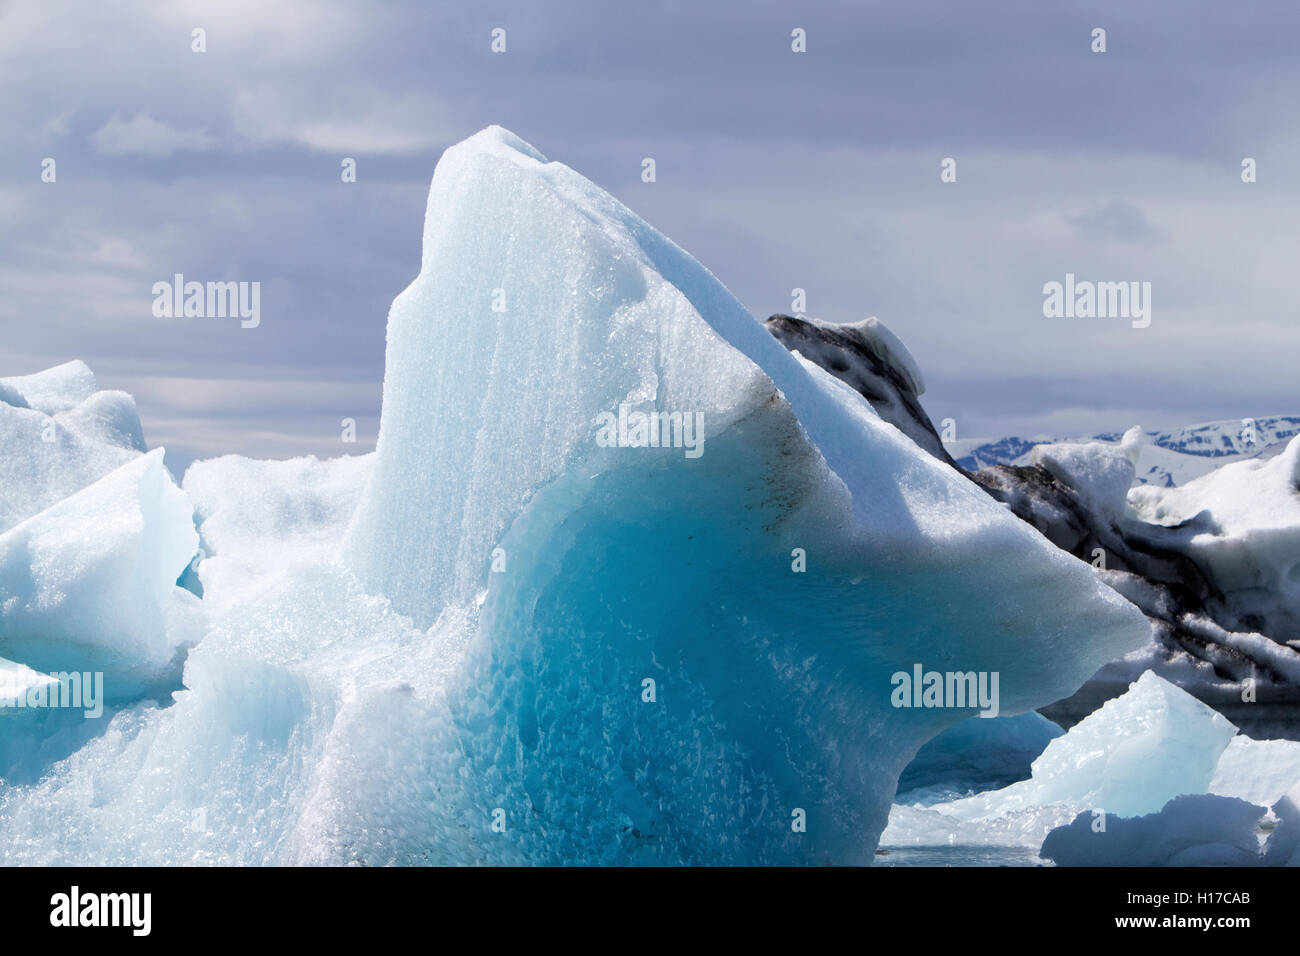 Vento e Acqua iceberg scolpito a Jokulsarlon laguna glaciale Islanda Foto Stock